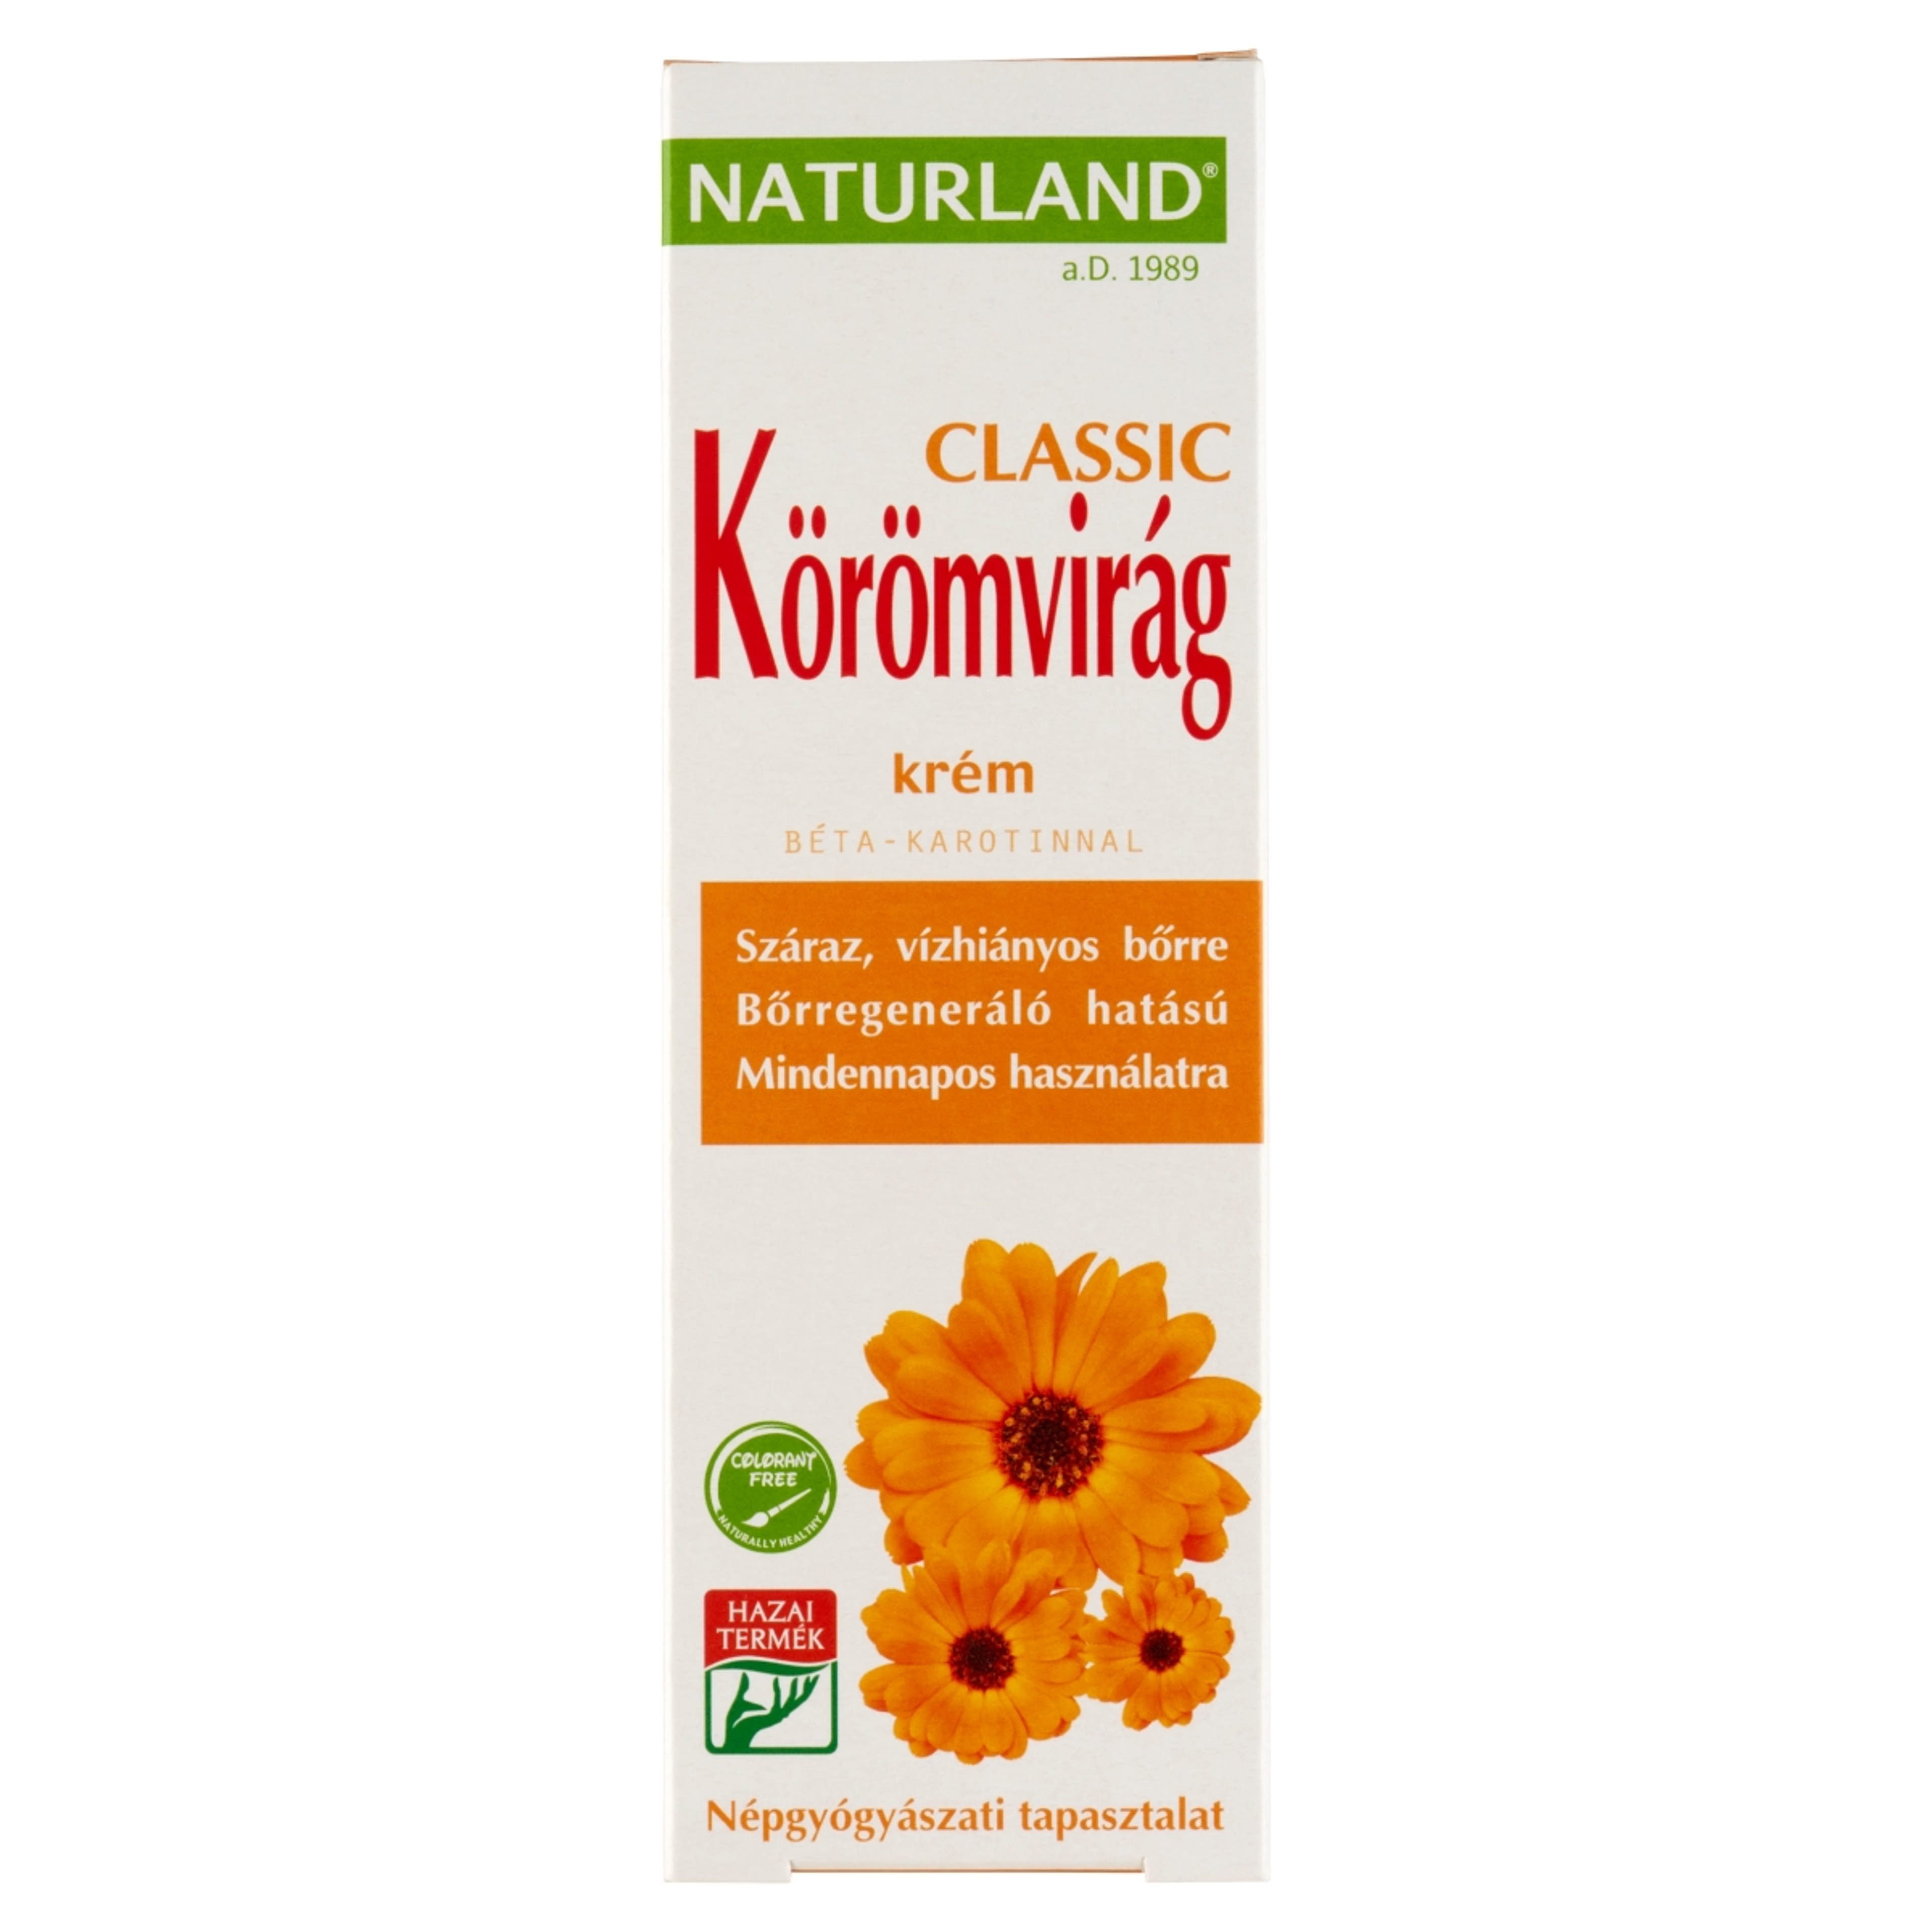 Naturland Classic Körömvirág Krém - 100 ml-1